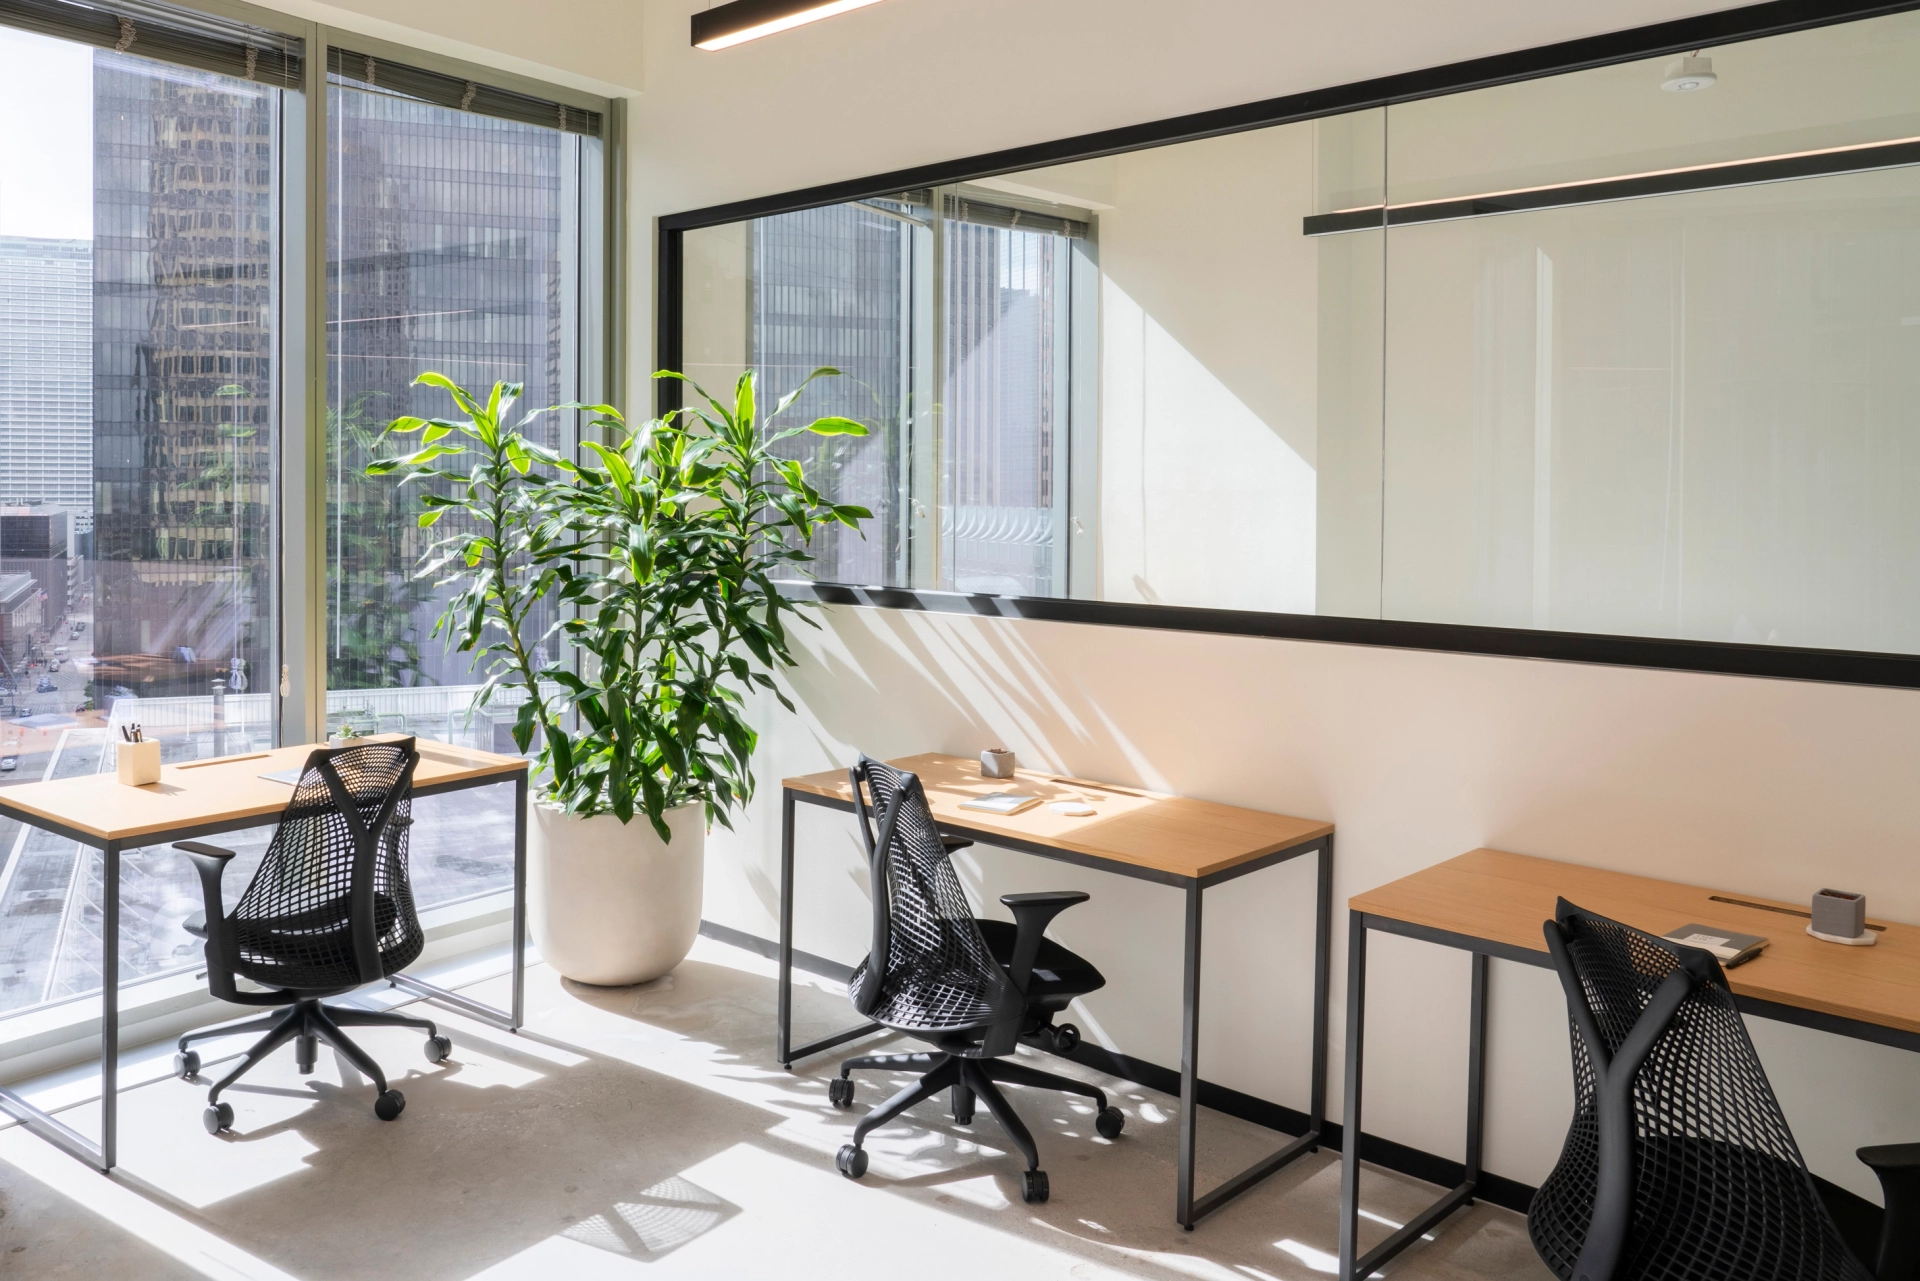 Un espace de bureau à Boston meublé de deux bureaux, de chaises et d'une plante.